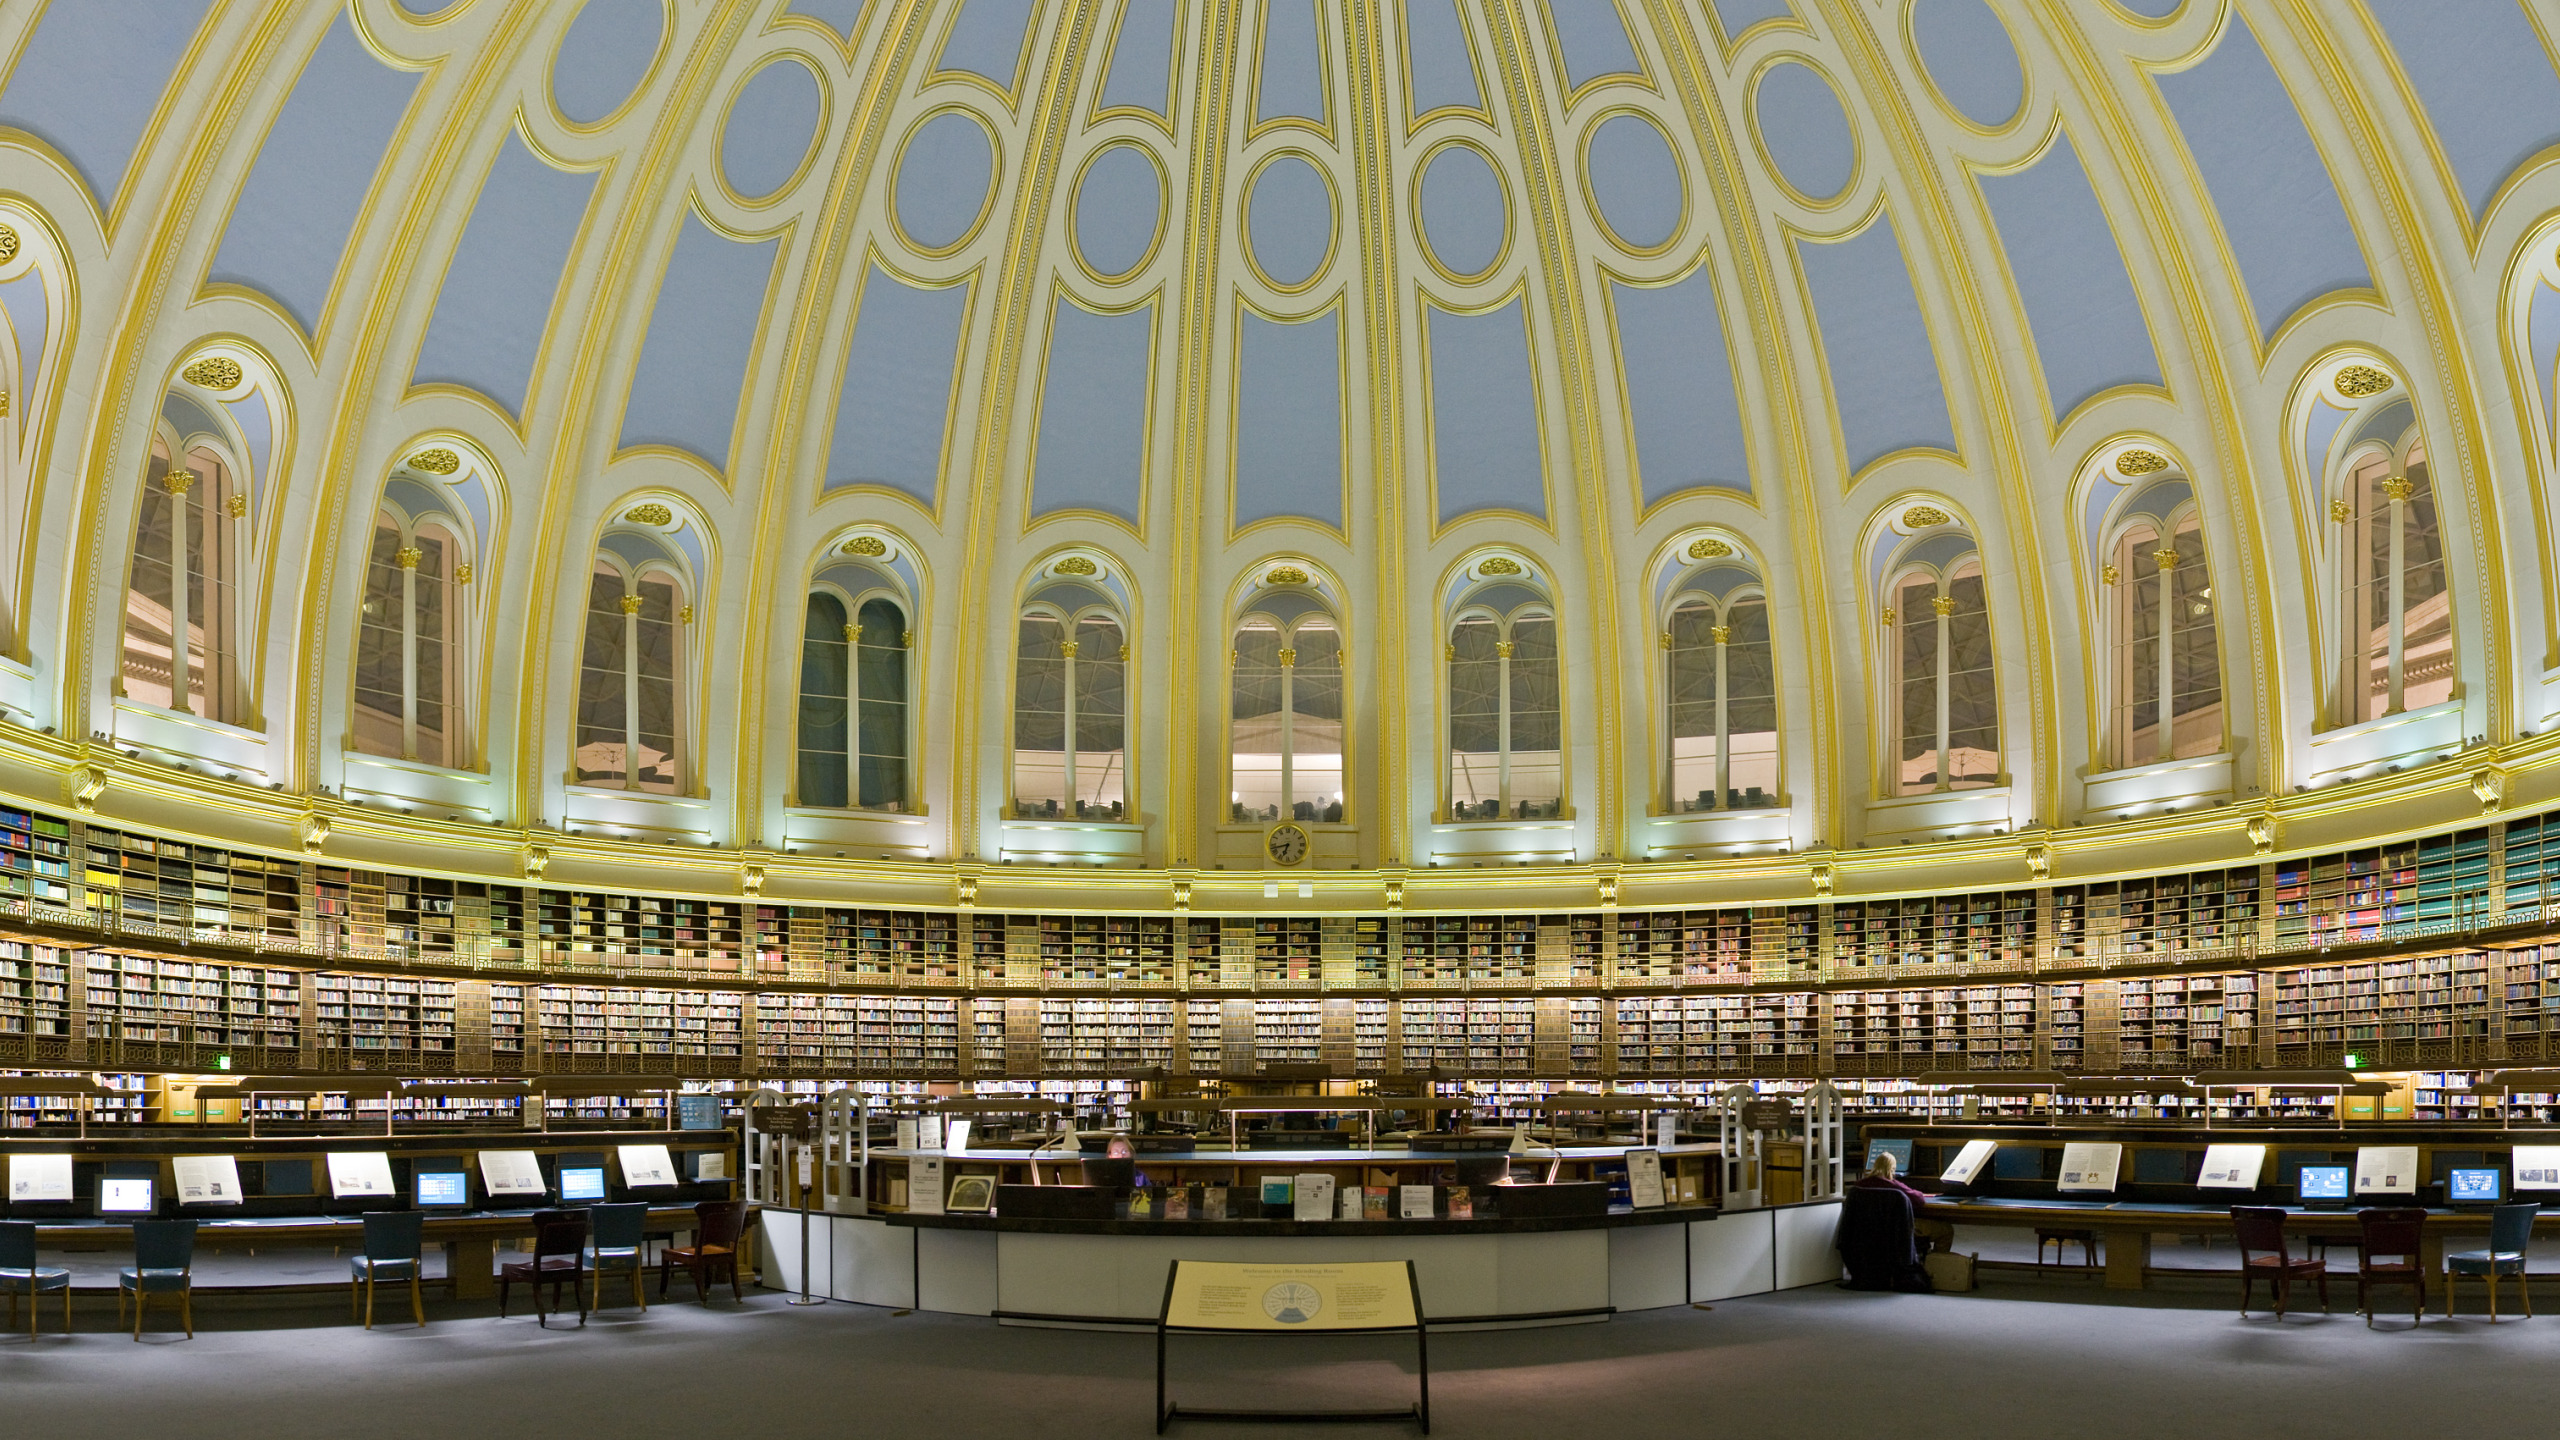 Библиотека л г. Библиотека британского музея в Лондоне. Читальный зал британского музея. Читальный зал британского музея в Лондоне. Национальная библиотека британского музея.